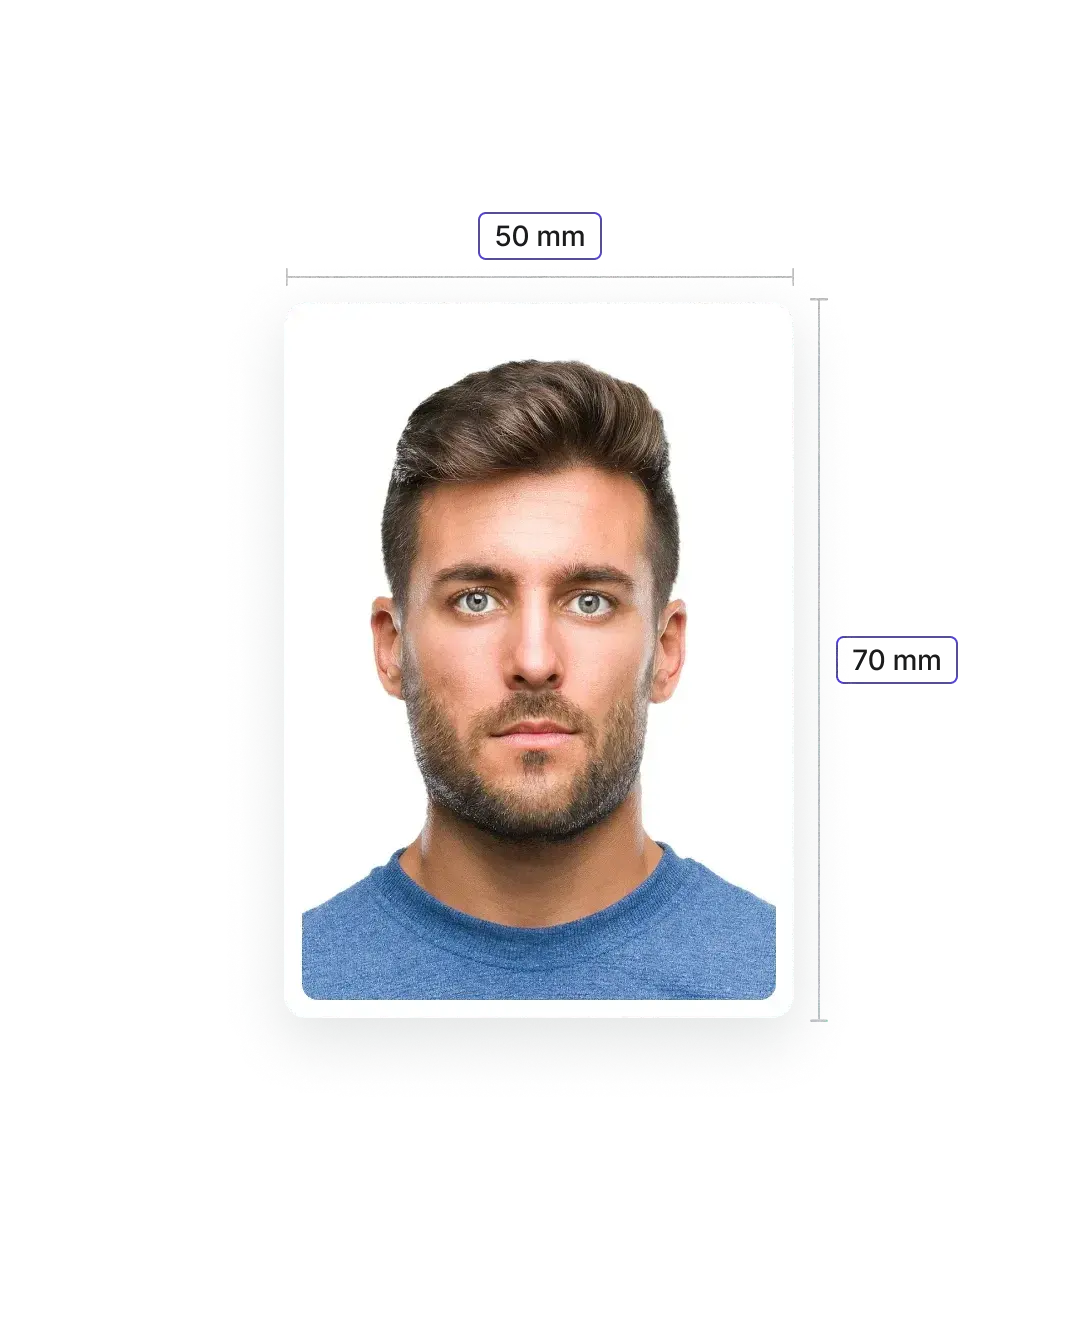 Passeport canadien - Taille de la photo numérique & exigences